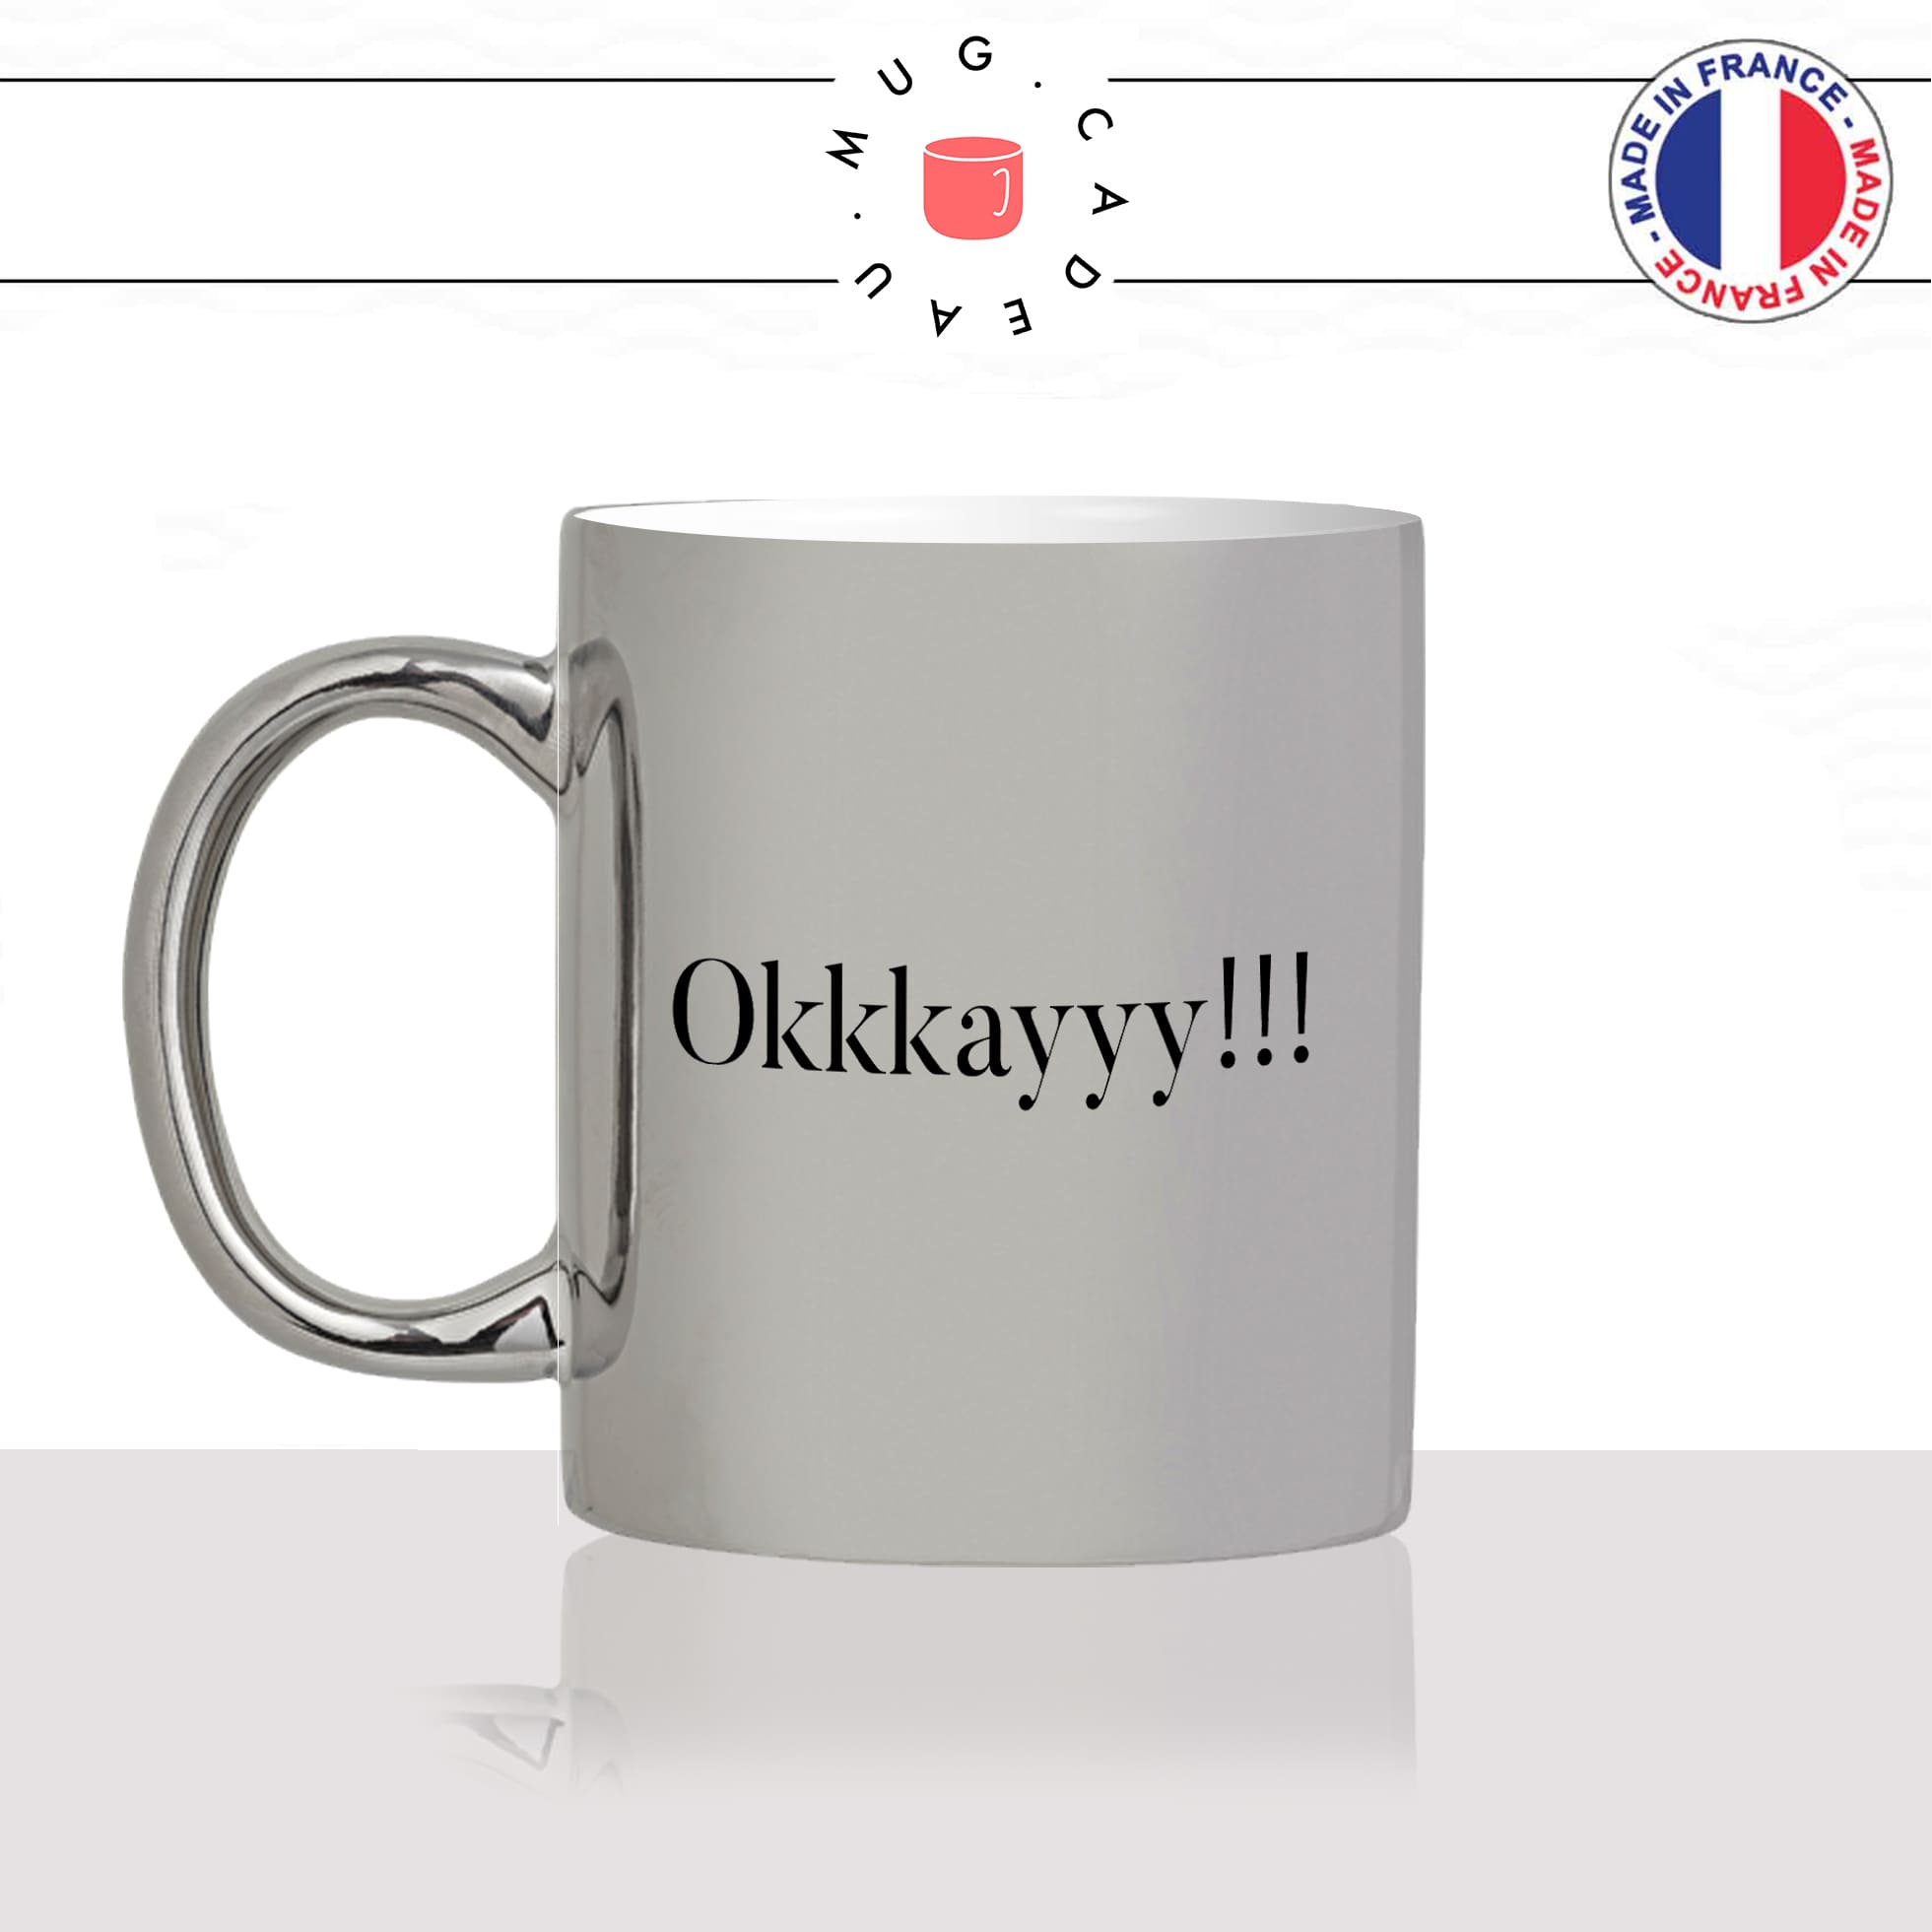 mug-tasse-argent-argenté-silver-film-les-visiteurs-okkkkay-ok-okay-clavier-collegue-humour-francais-idée-cadeau-fun-cool-café-thé